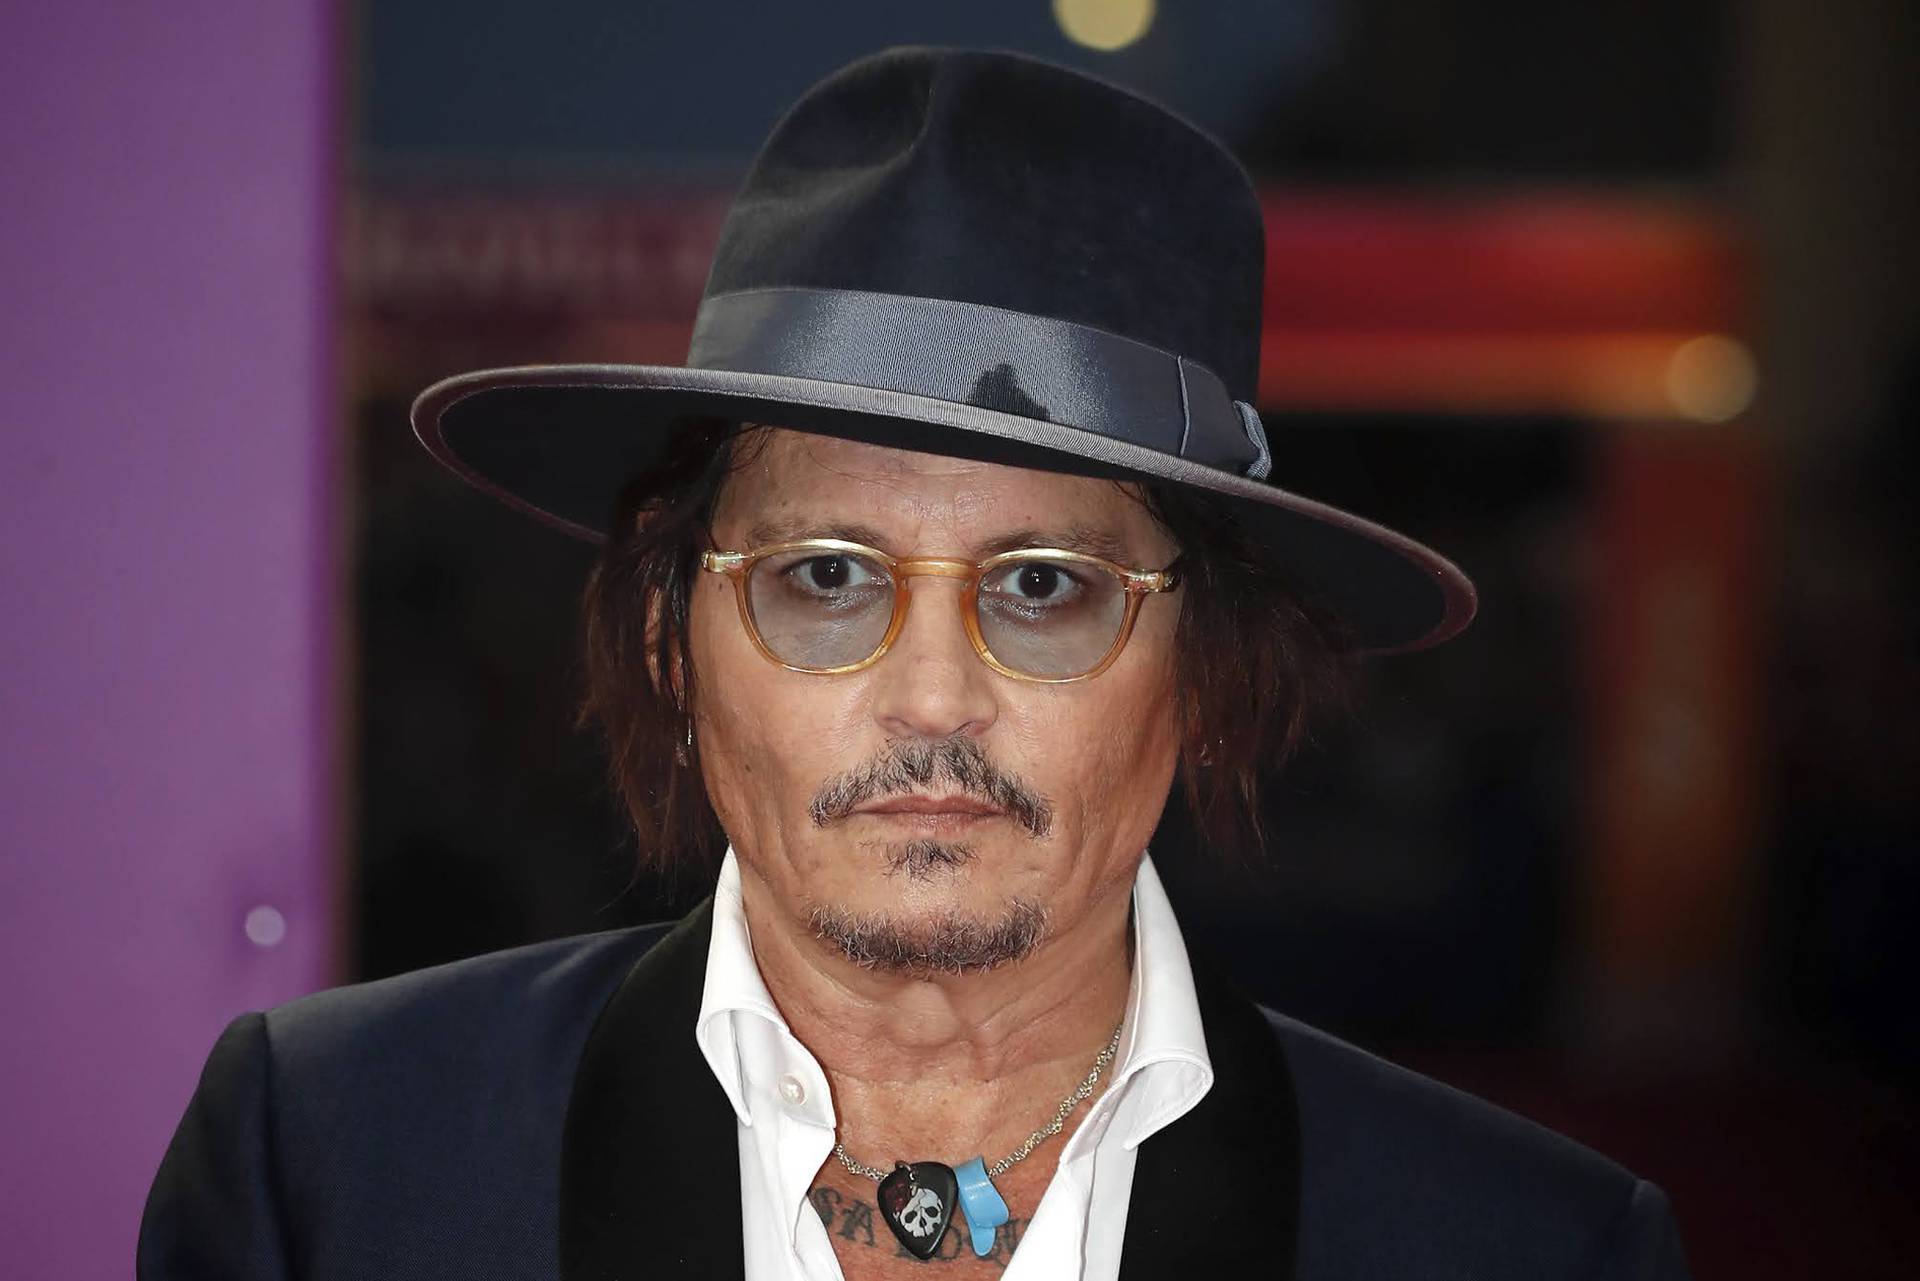 Glumac prozvao kolege: Johnny Depp je precijenjen, a Edward Norton ne zna gdje mu je mjesto